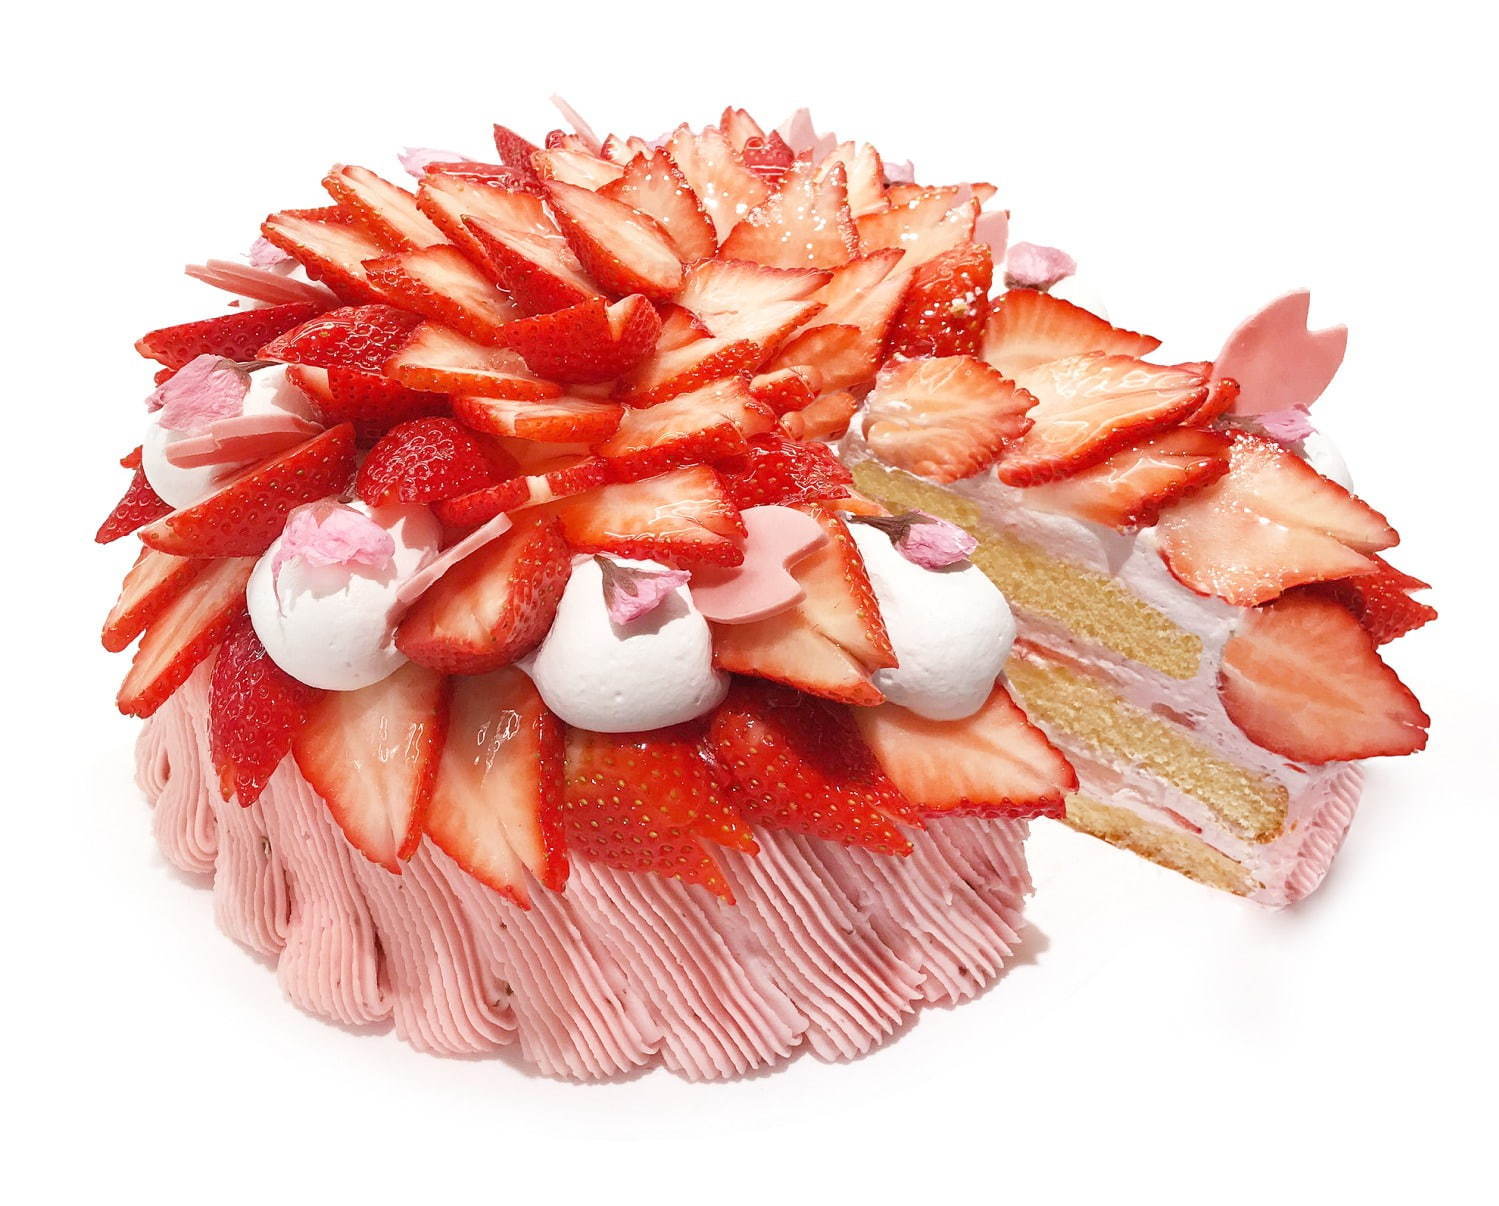 満開～いちごと桜のショートケーキ～ 1ピース 1,100円
※一部店舗は価格が異なる。